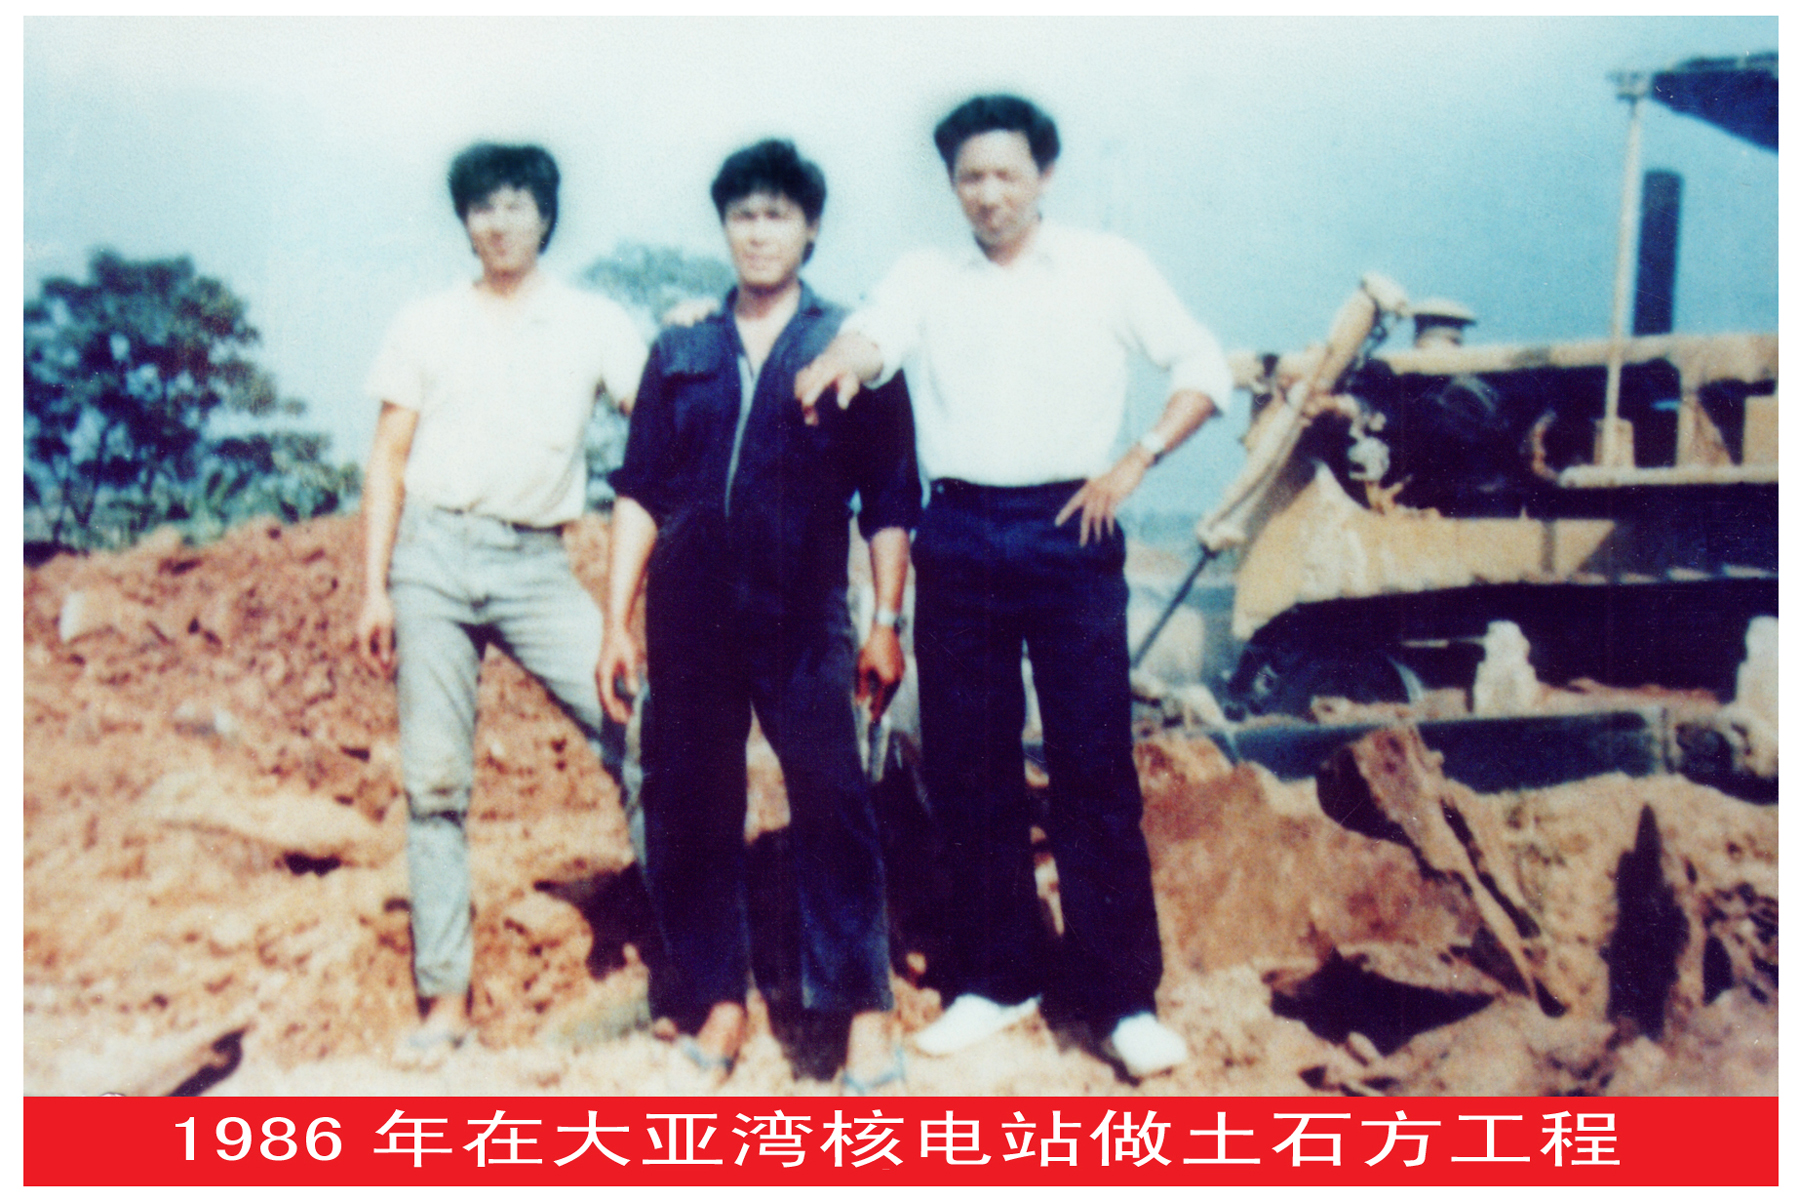 四1、1985-1986年连续两年，郑卓辉在广东大亚湾核电站先后承包了大坑水库库底清理和土建基础负挖大型土石方工程，日夜奋战在大亚湾建设工地上。图为1986年与同伴在建设工地上的留影。